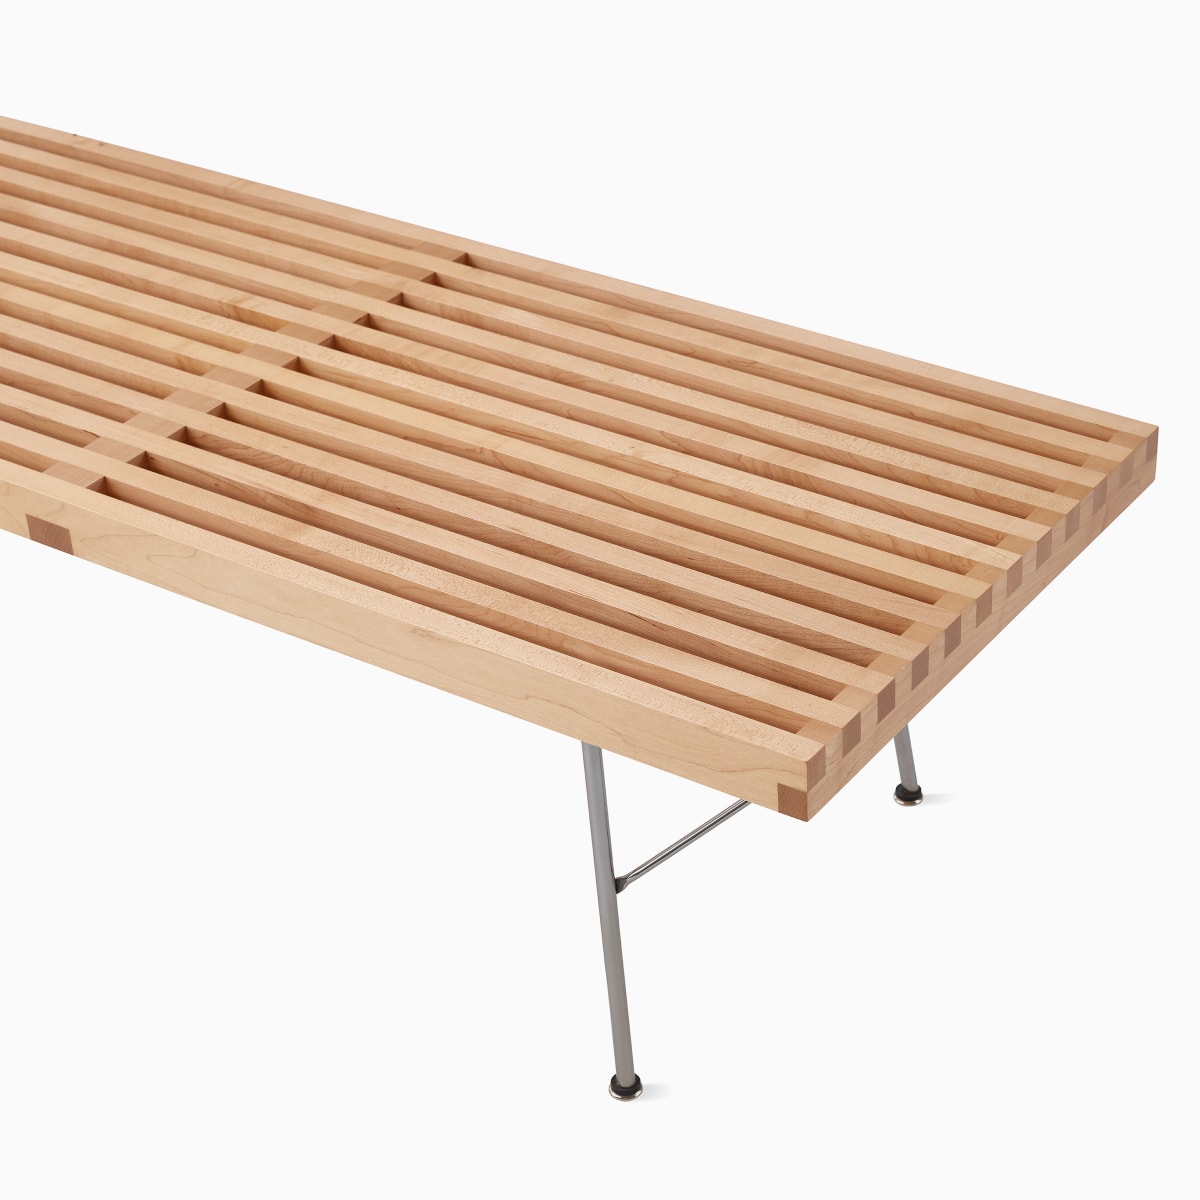 Primer plano en detalle del benching con plataforma Nelson, donde se resaltan los listones de madera maciza.